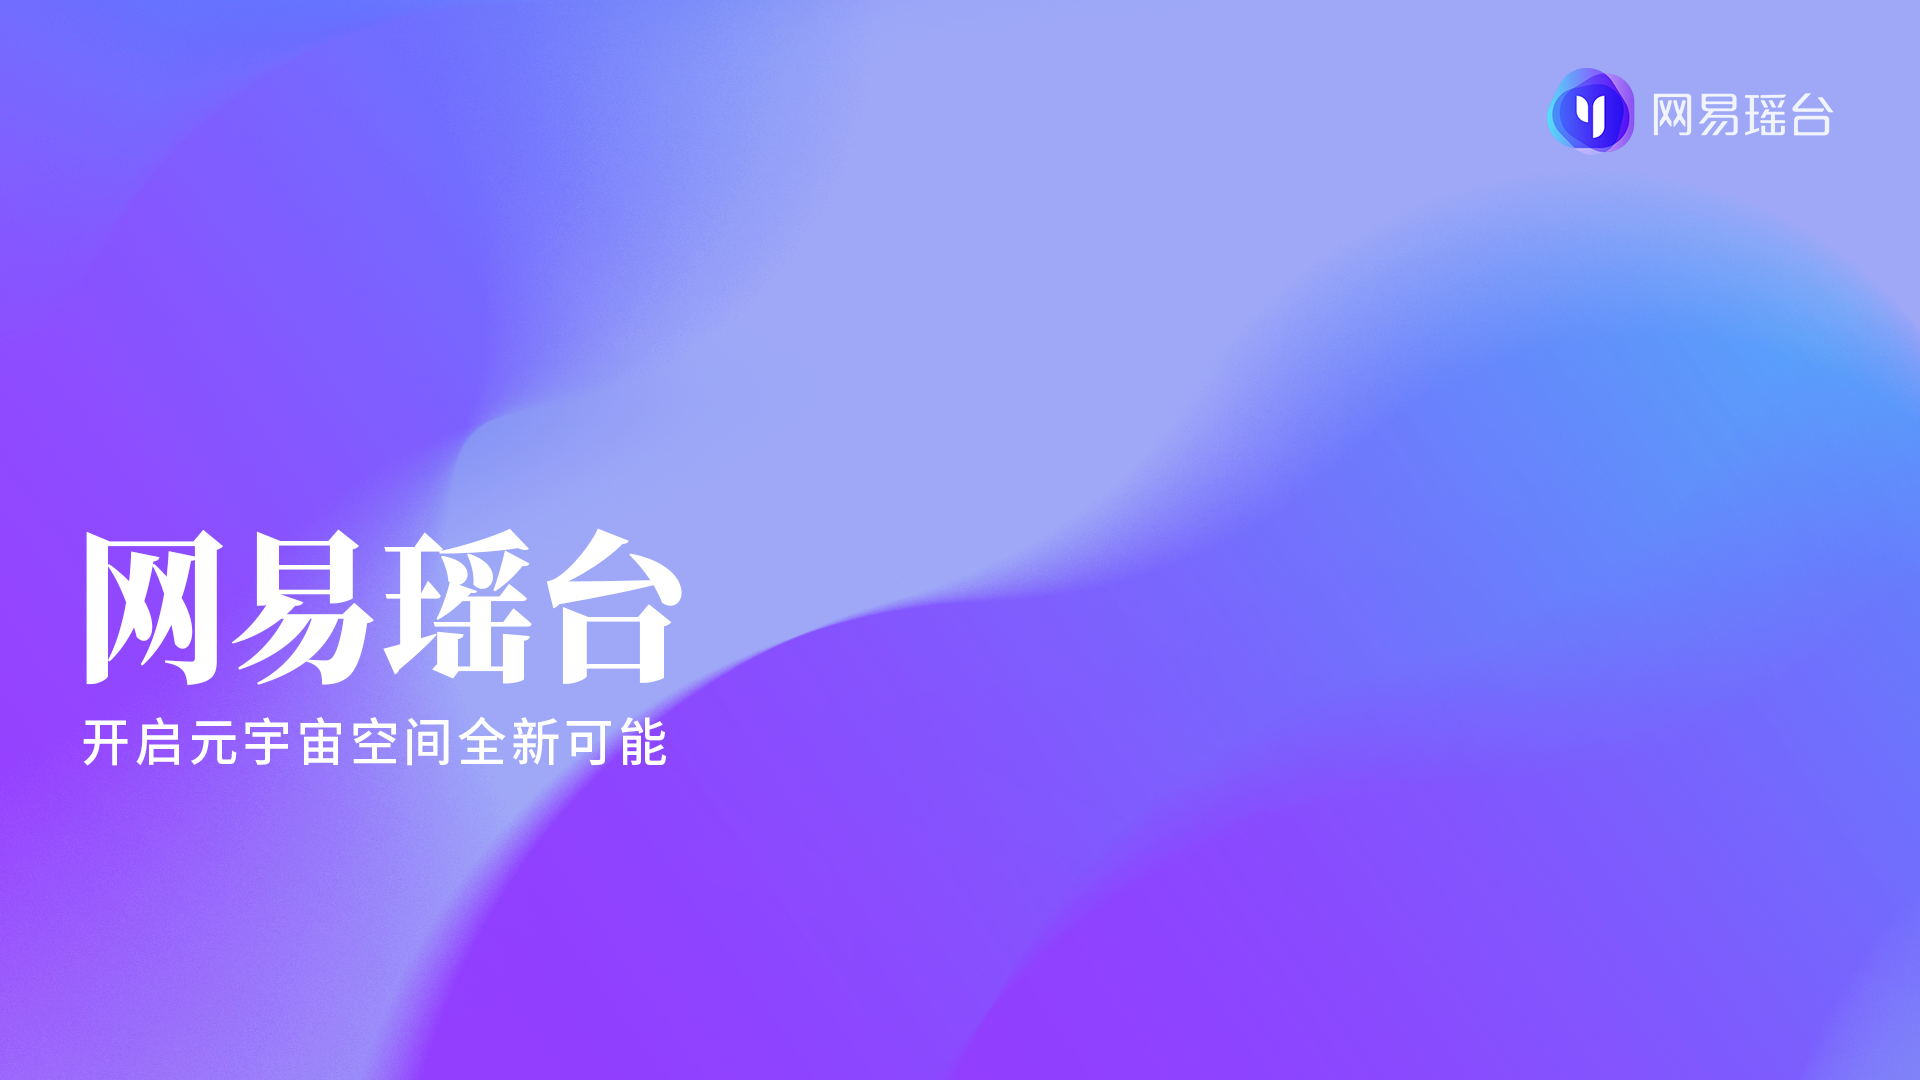 这是一张图形简洁的平面设计图片，主要由紫色渐变背景构成，中间有白色简体中文字“网易云音乐 开启音乐梦想新篇章”。